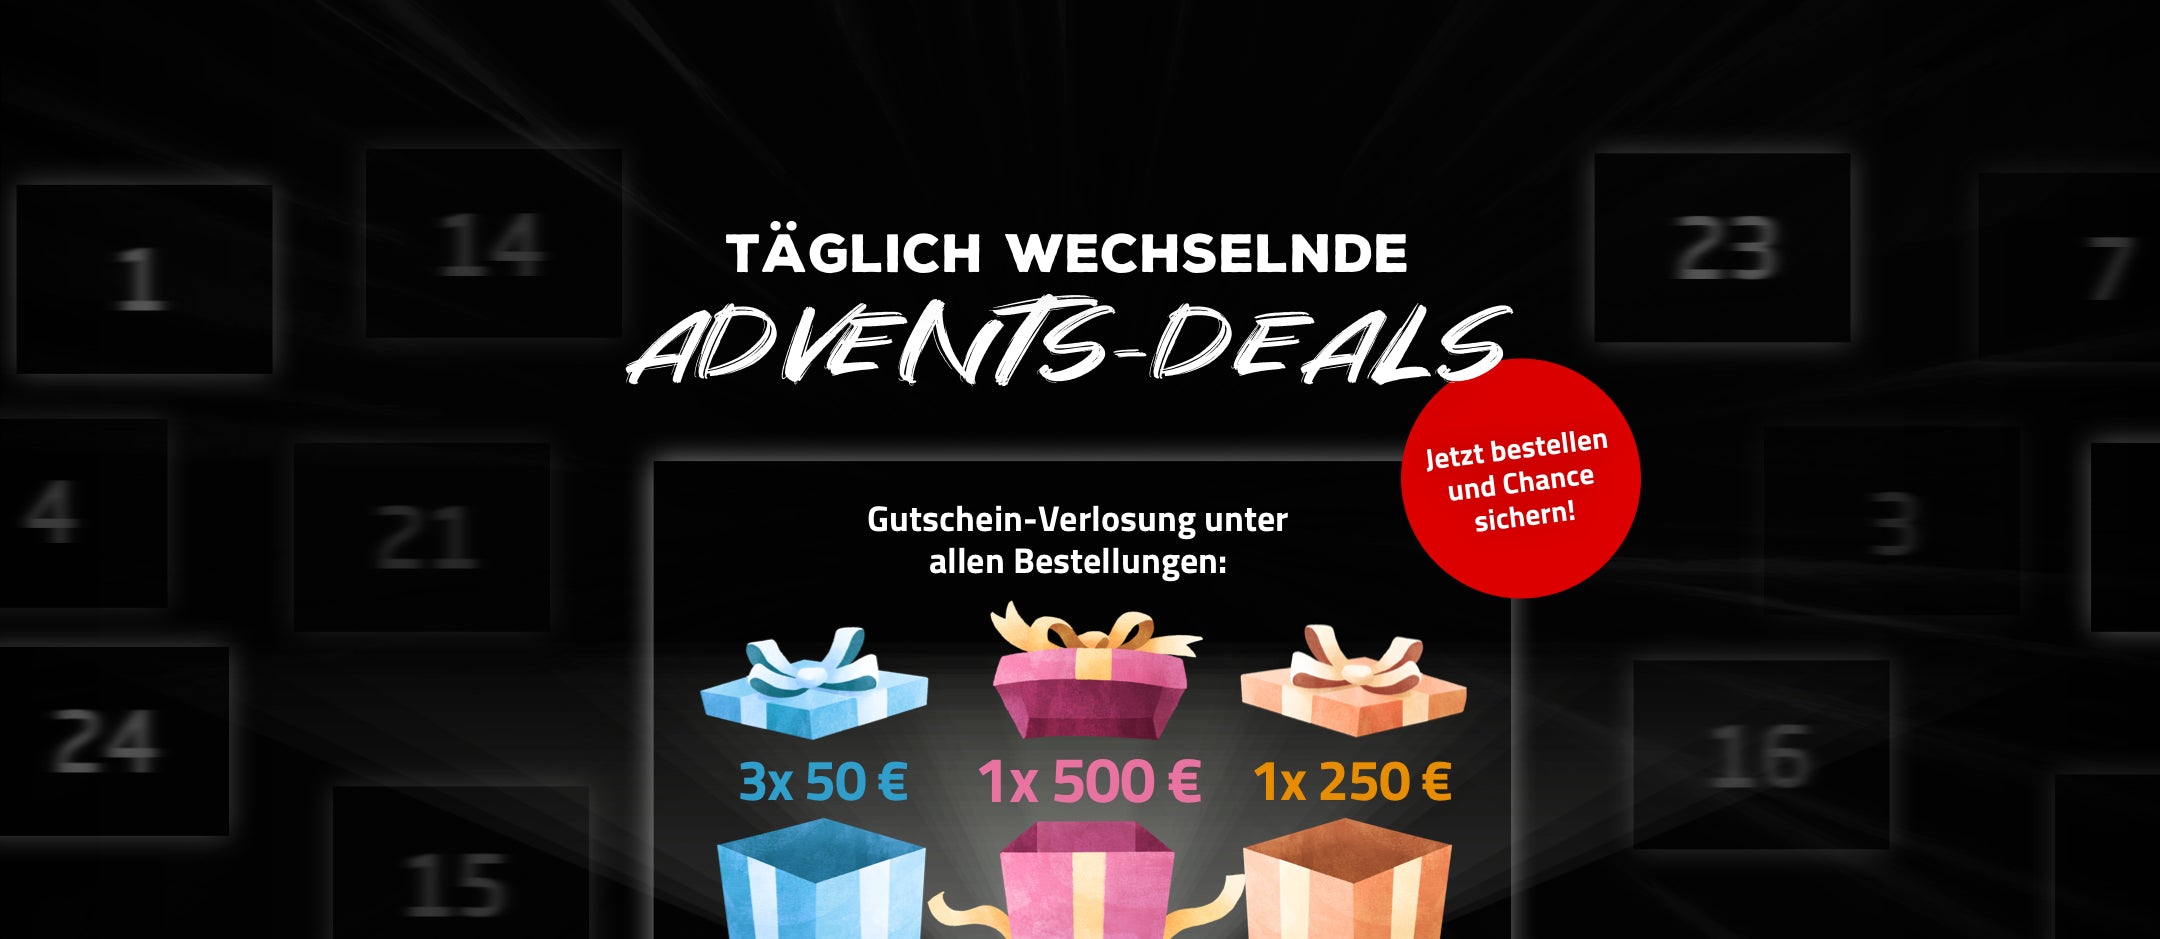 Advents Deals